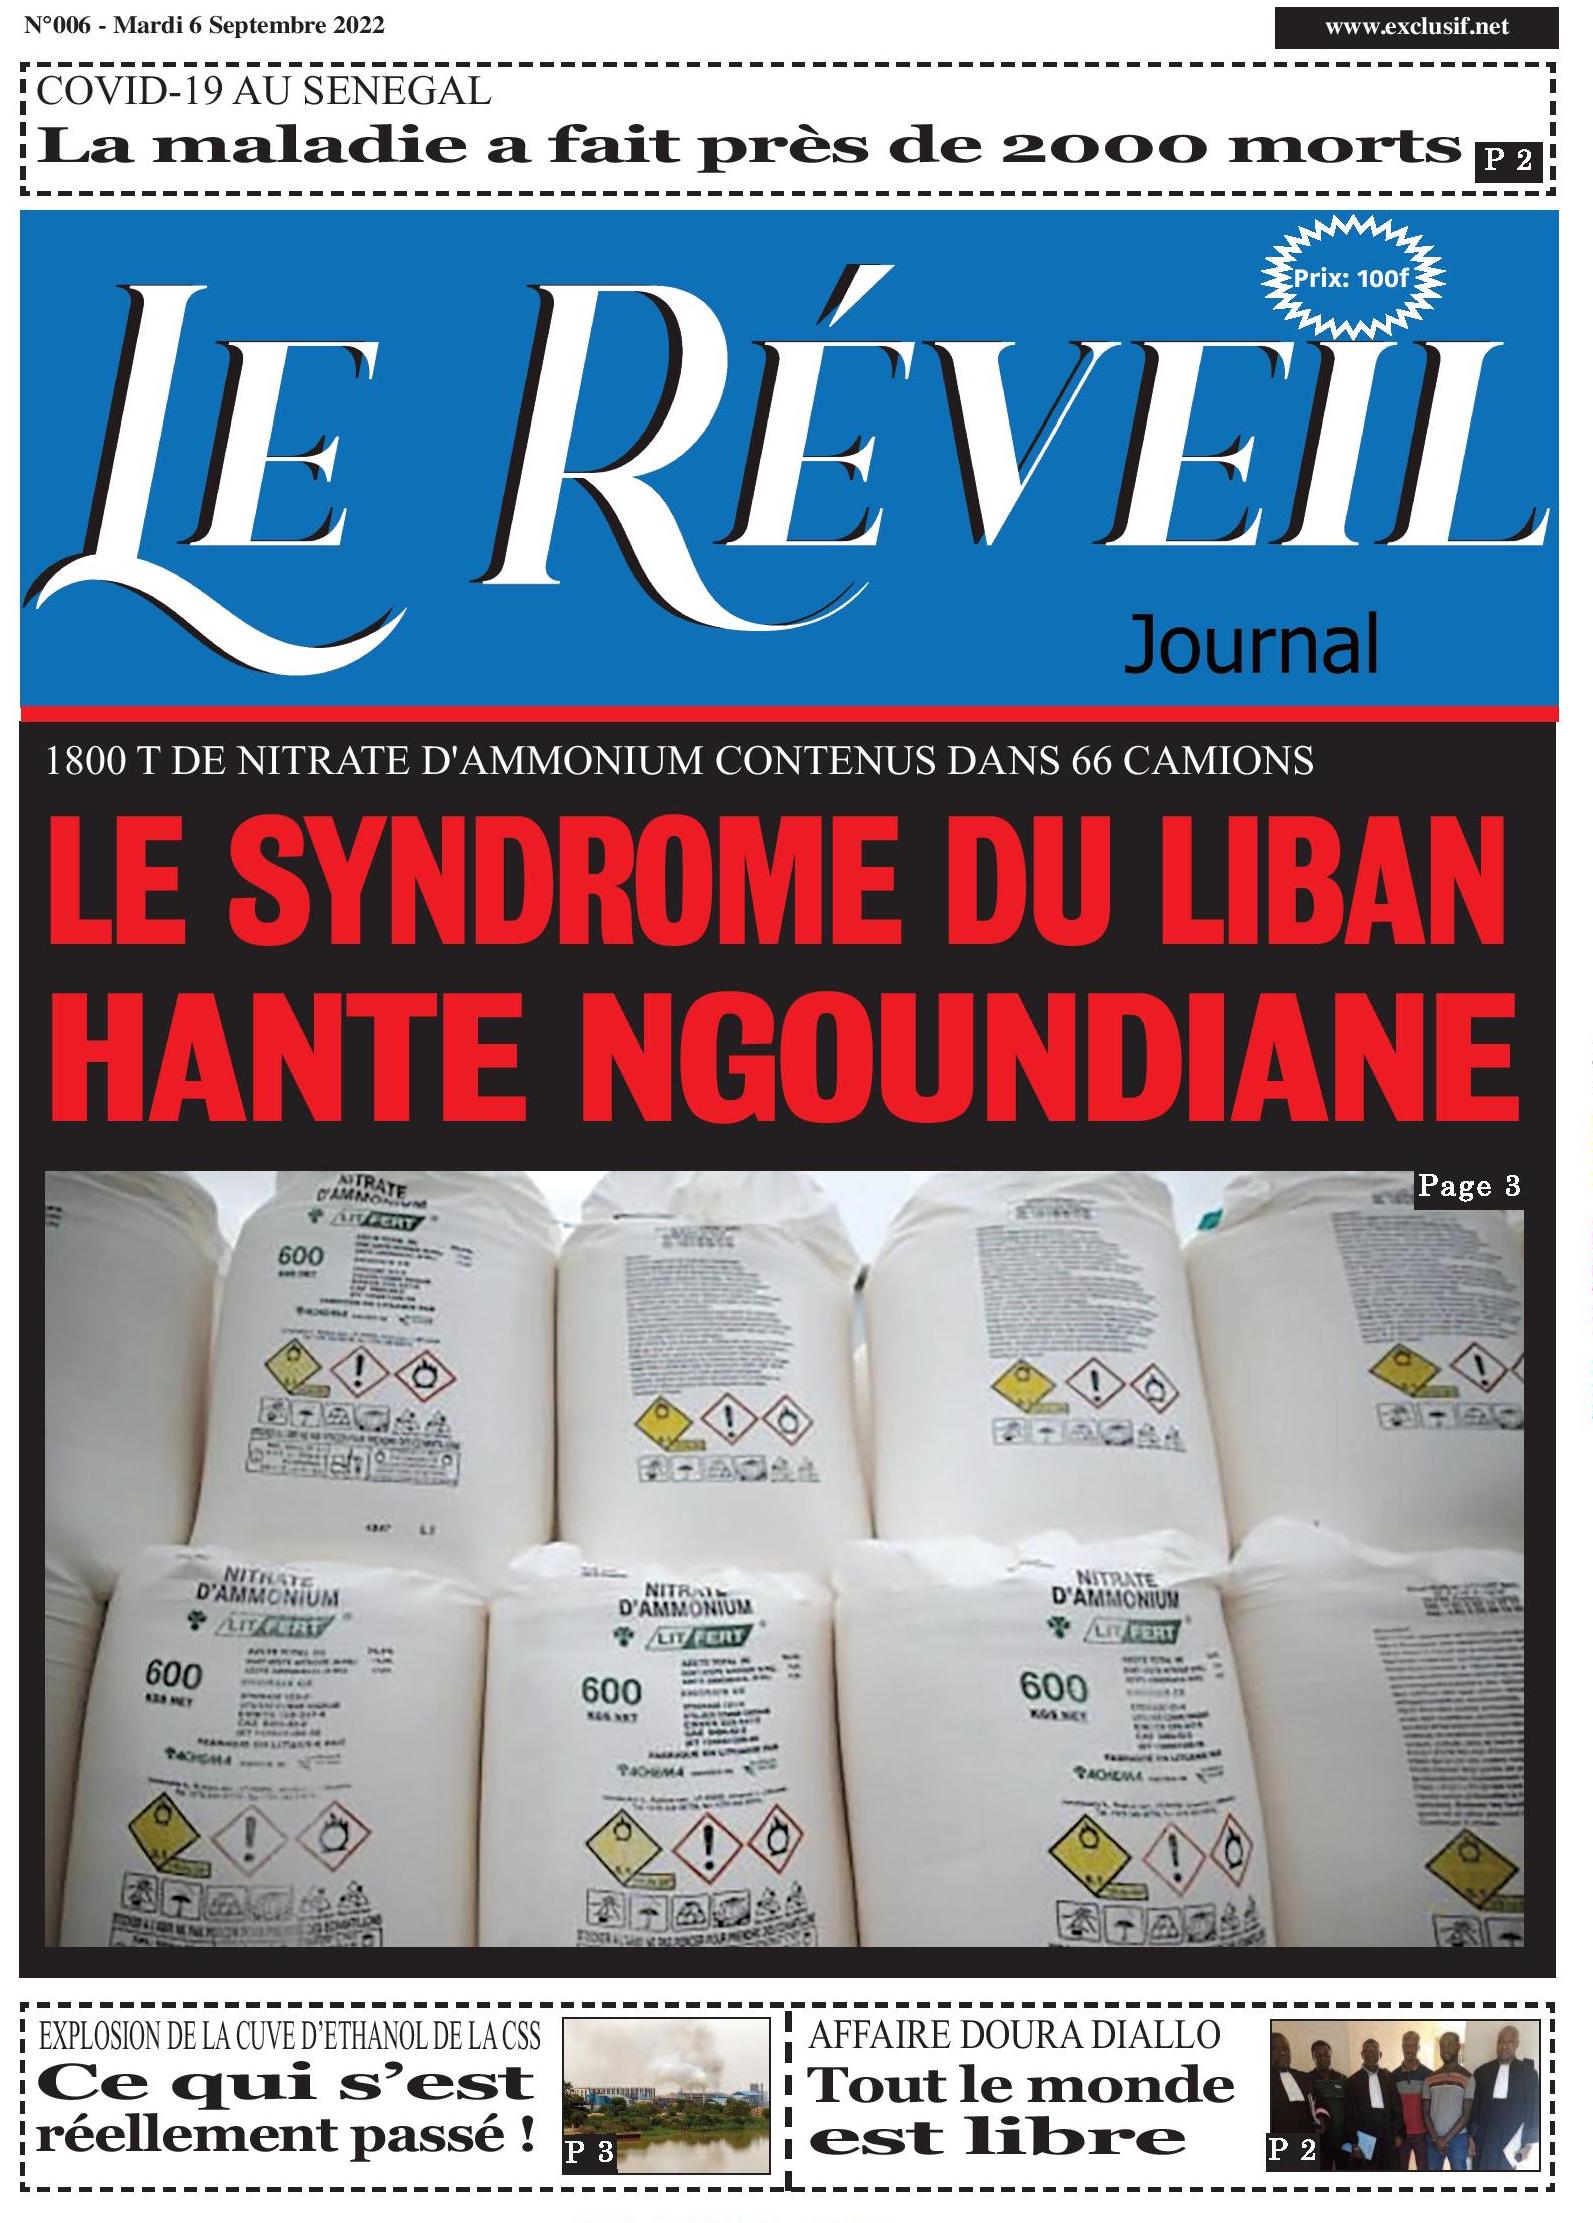  Le Quotidien "Le Réveil" du Mardi 06 Septembre 2022... 